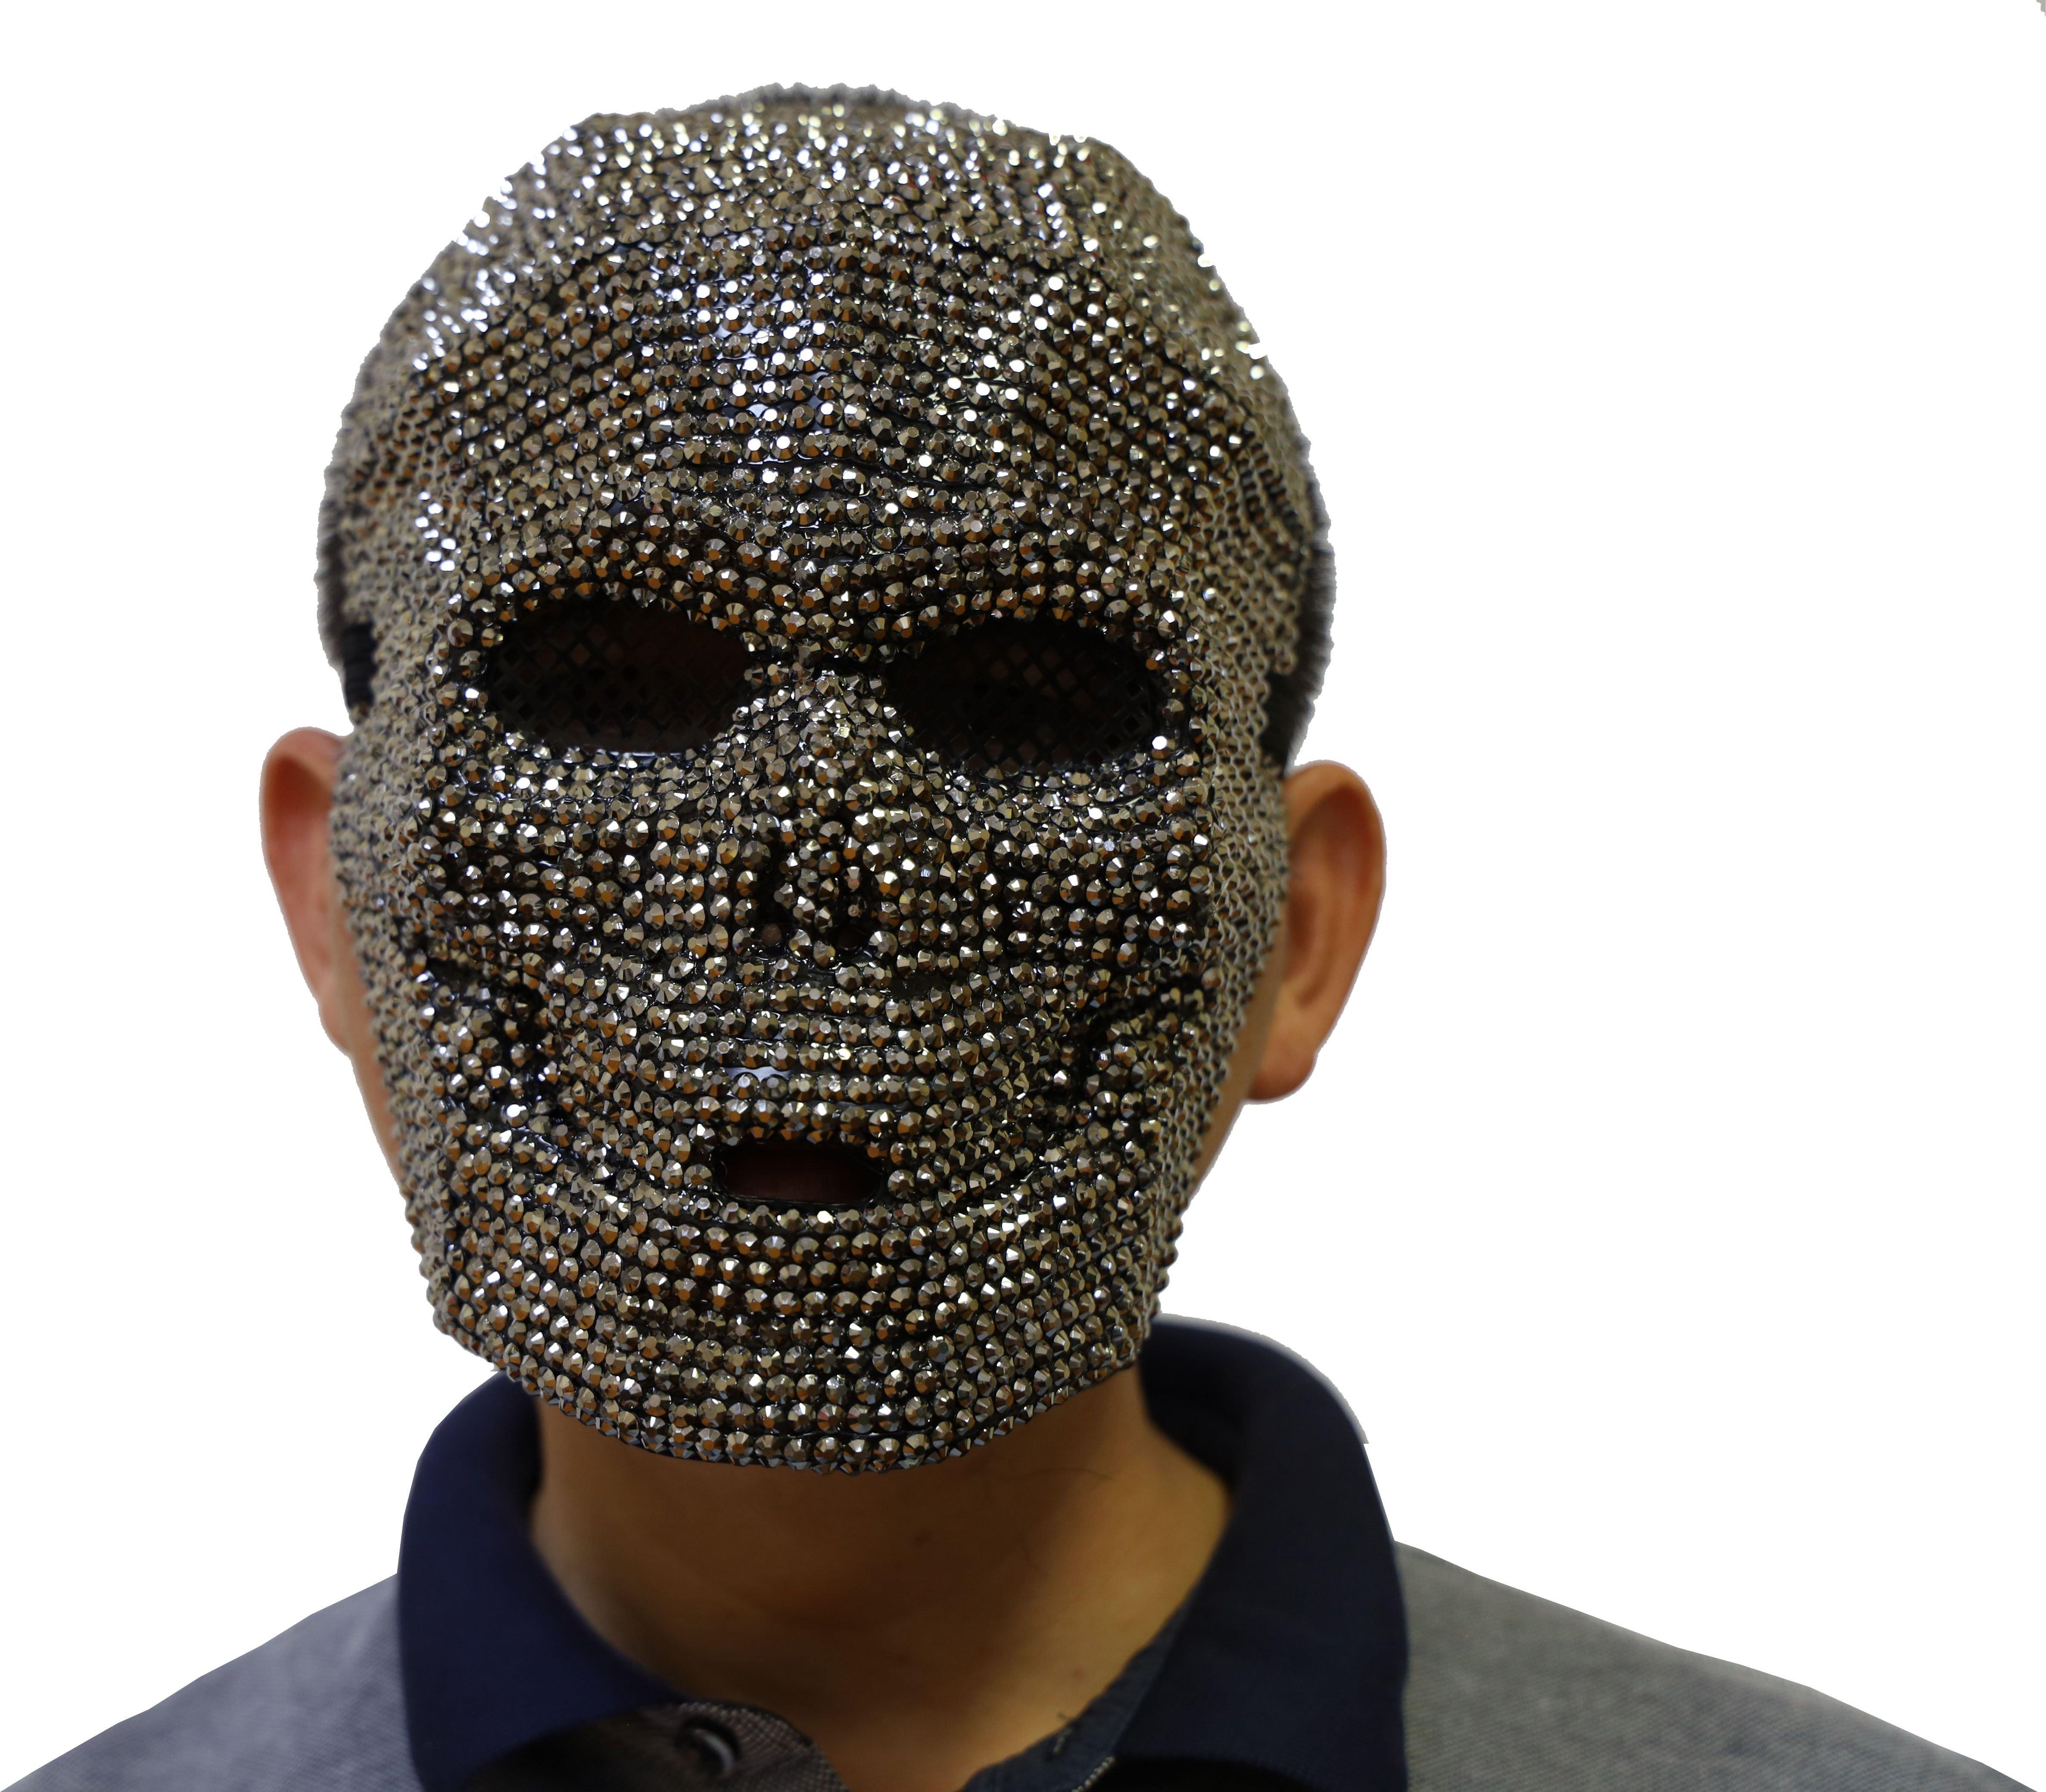 Bling Jason Mask 